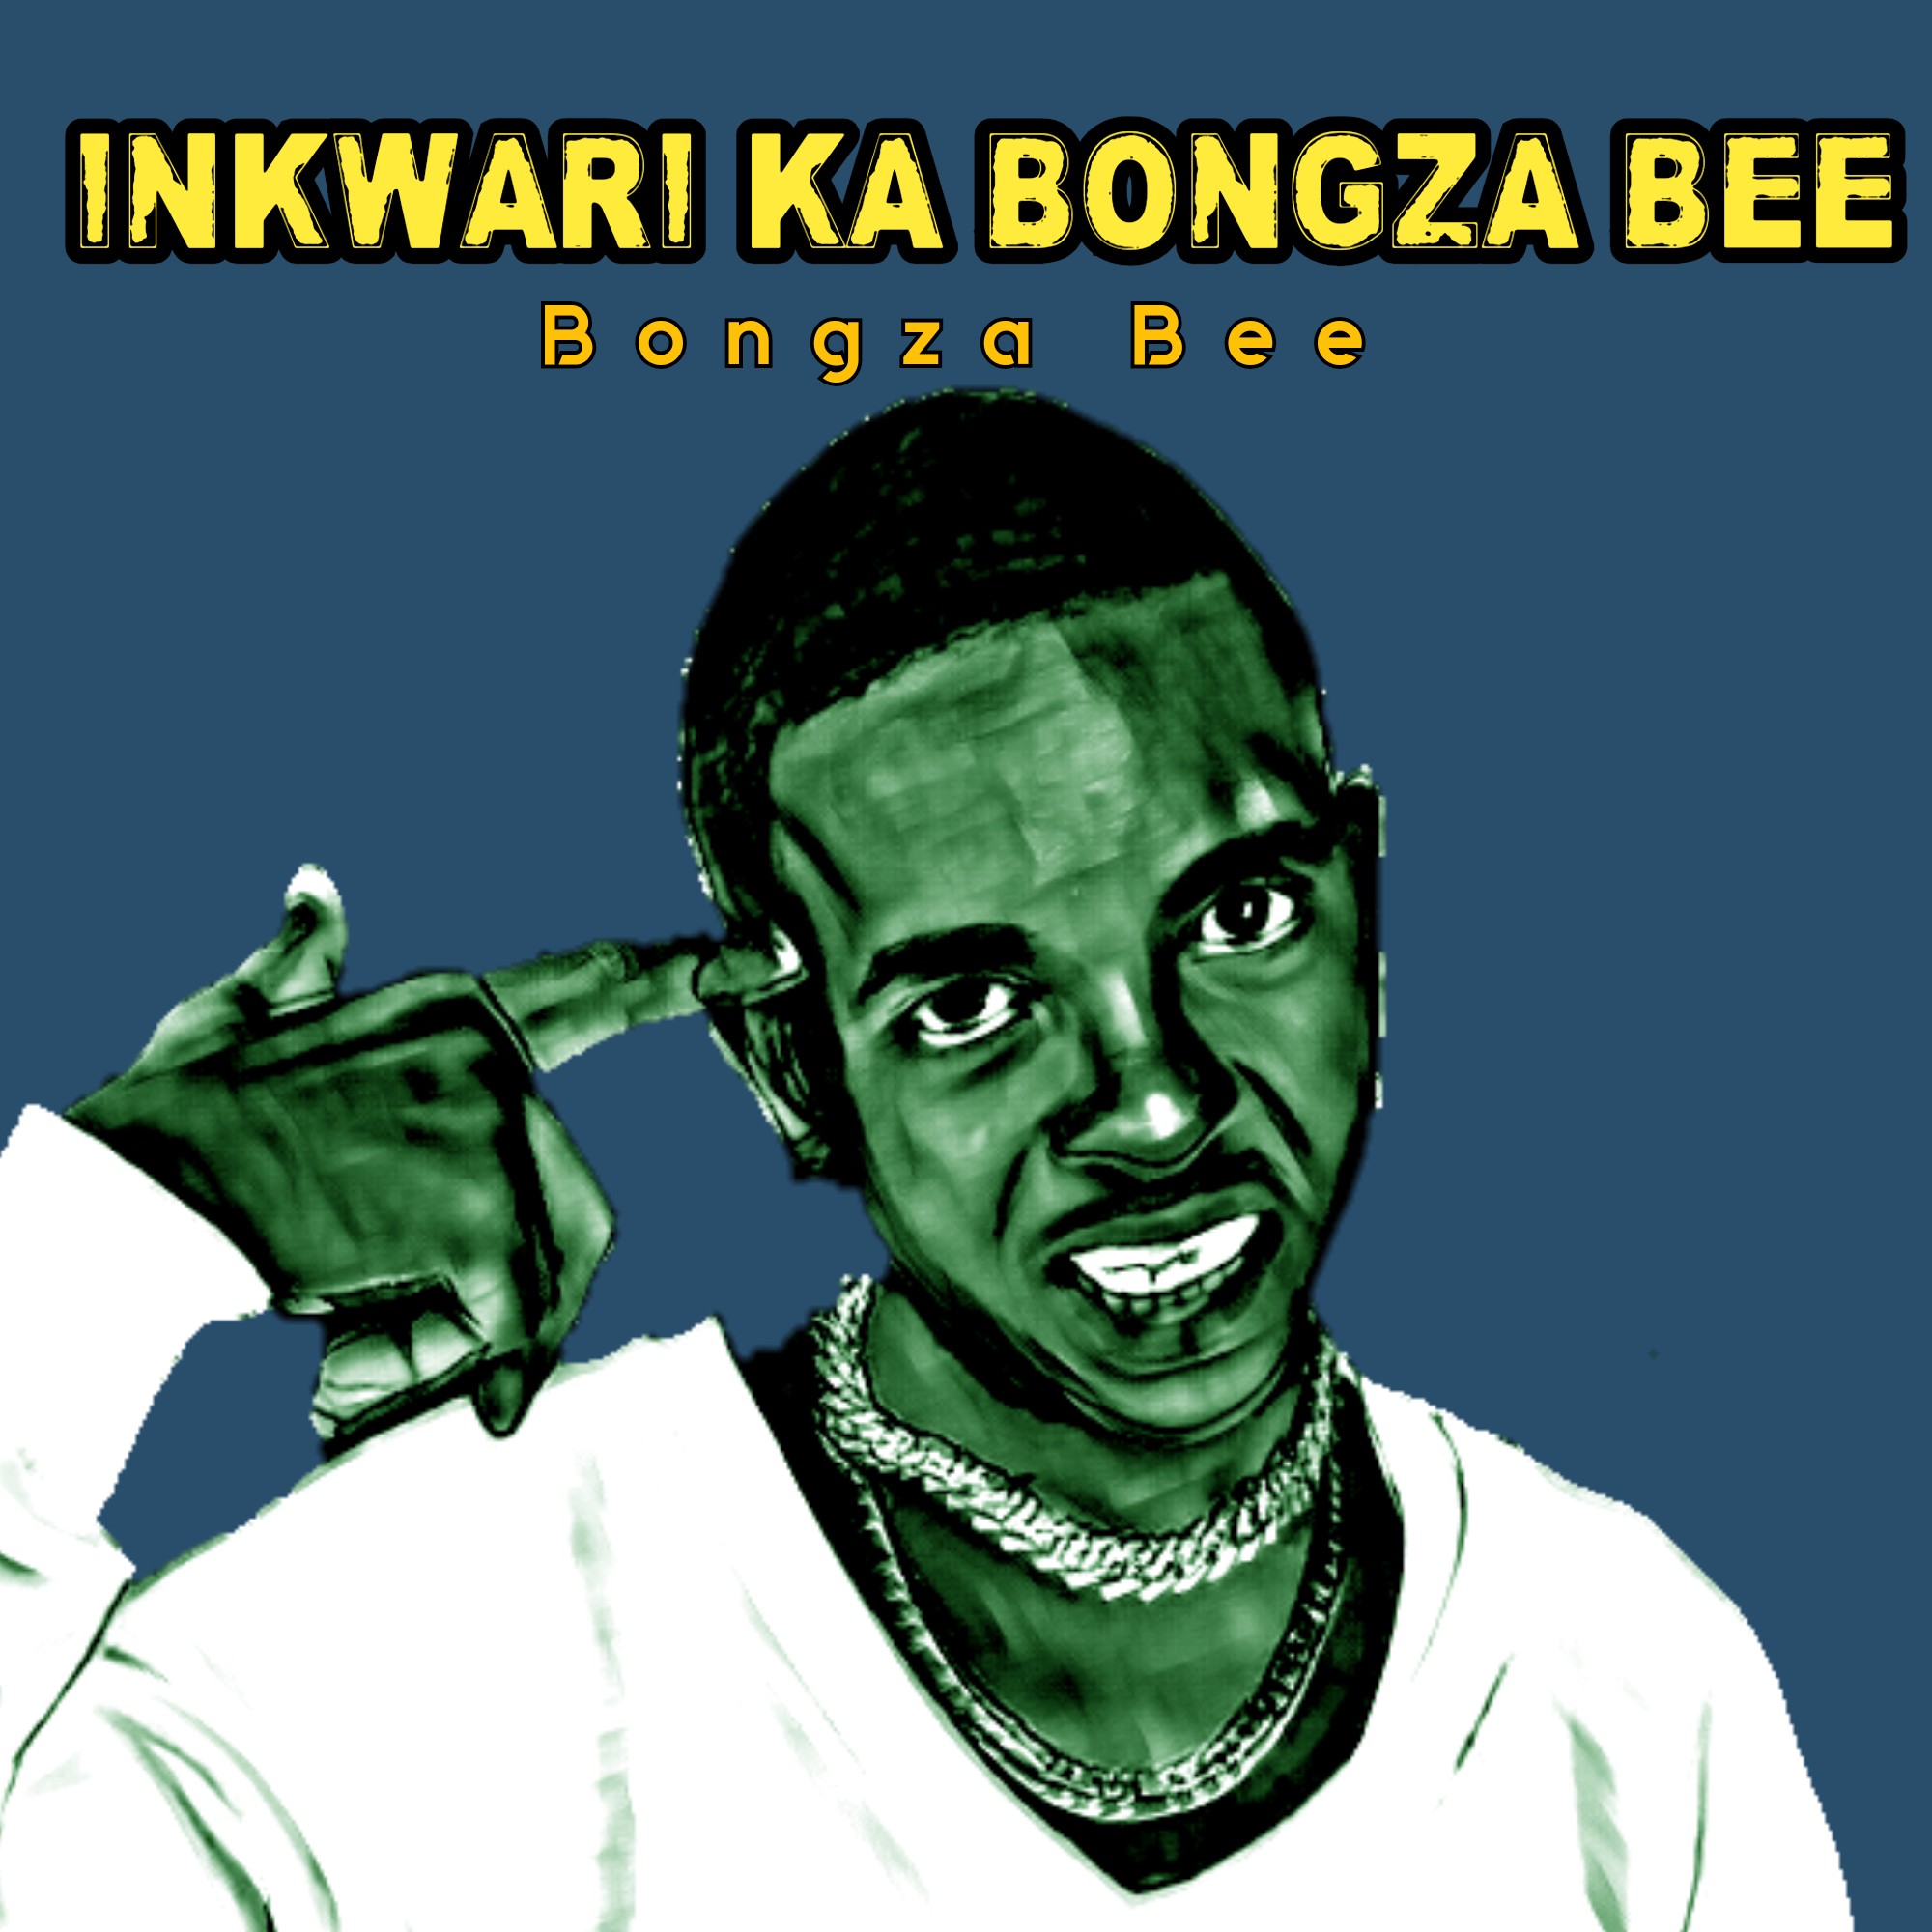 Inkwari ka bongza bee - Bongza Bee